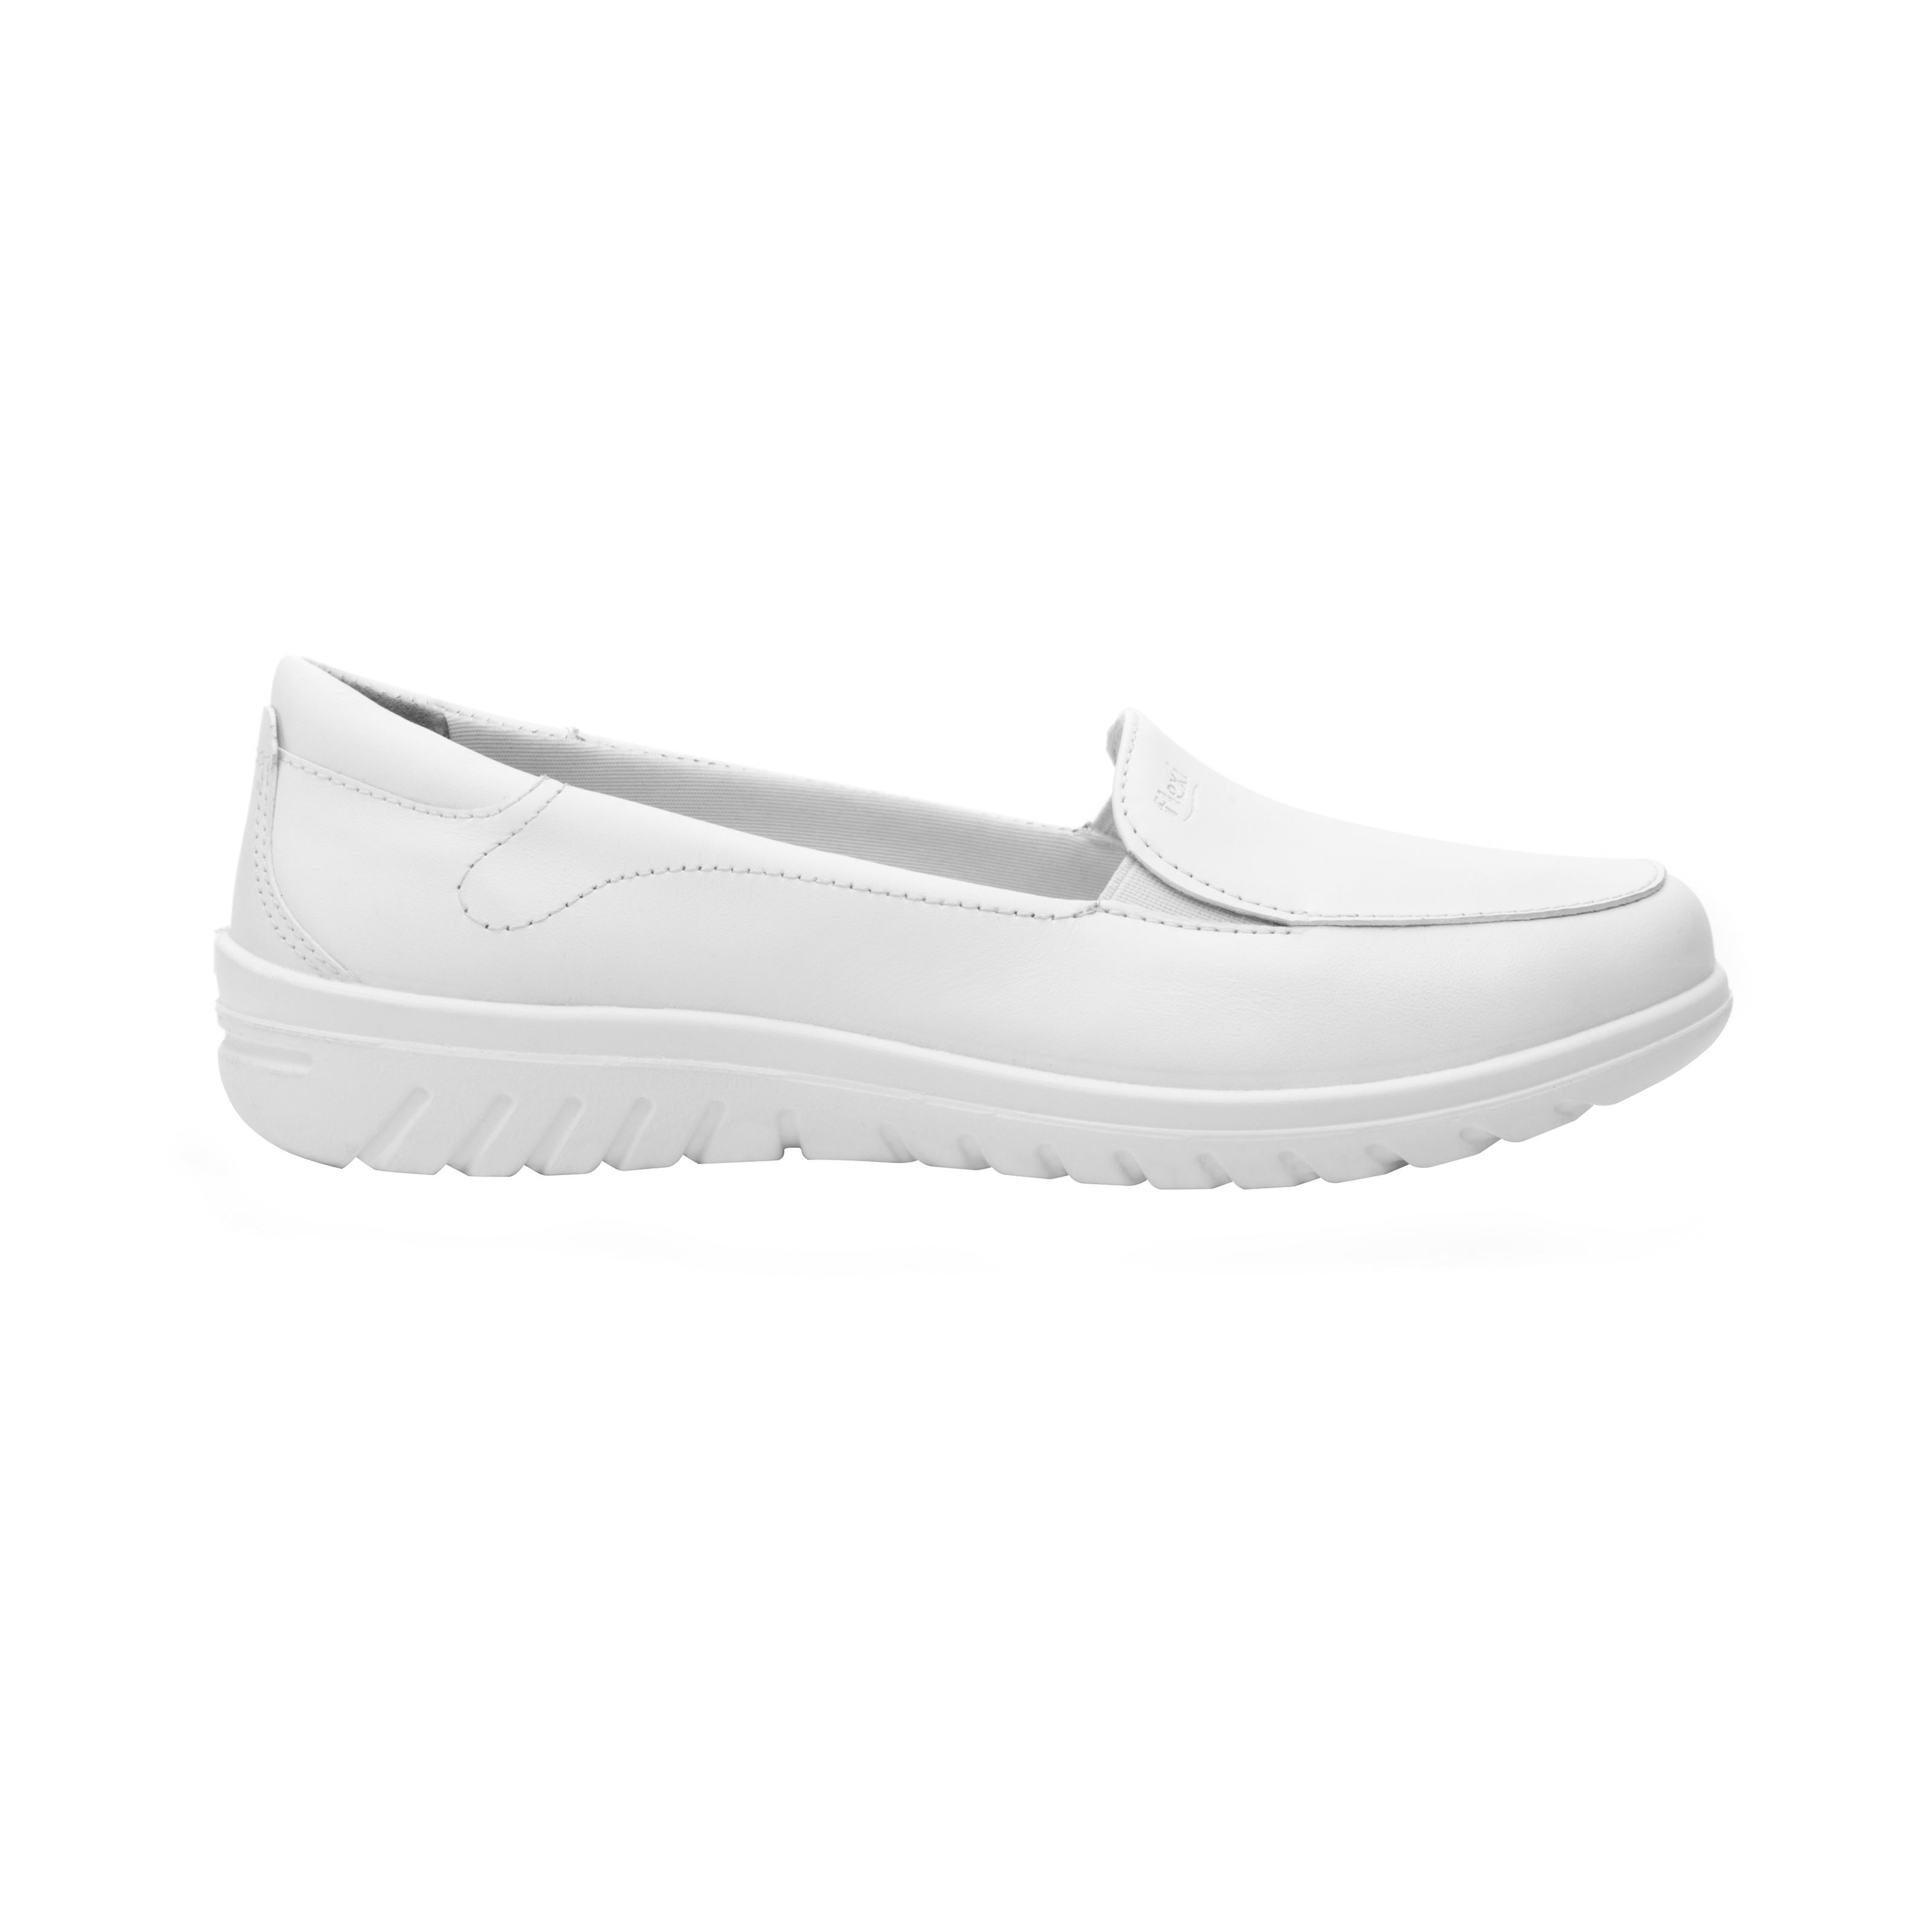 Zapato de Servicio Clinico Flexi Blanco para Mujer [FFF3444]